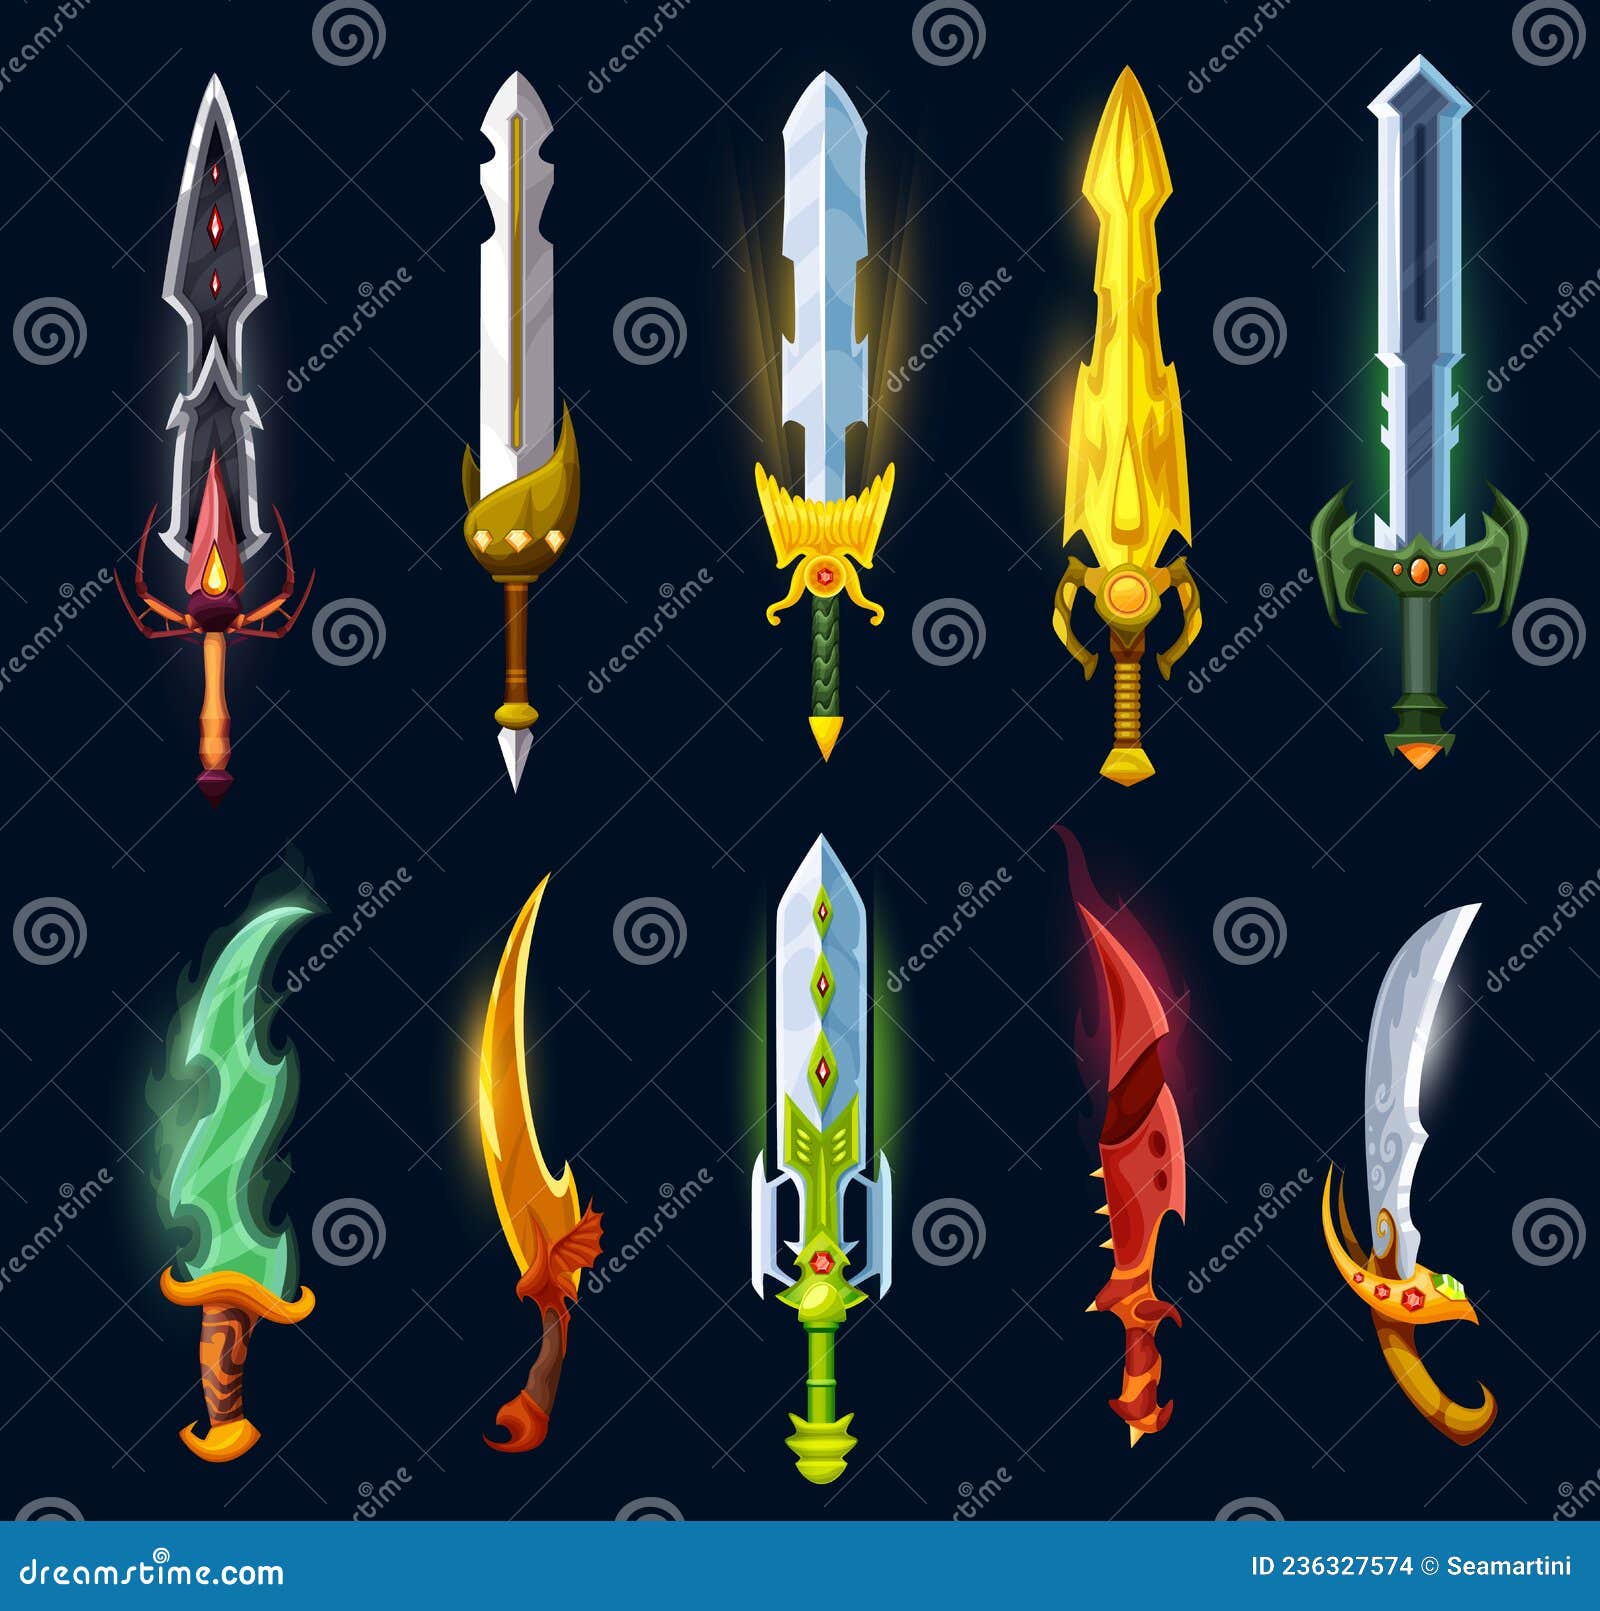 Vector Image Fantasy Sword Knight Dragon's Blade Weapon Medieval